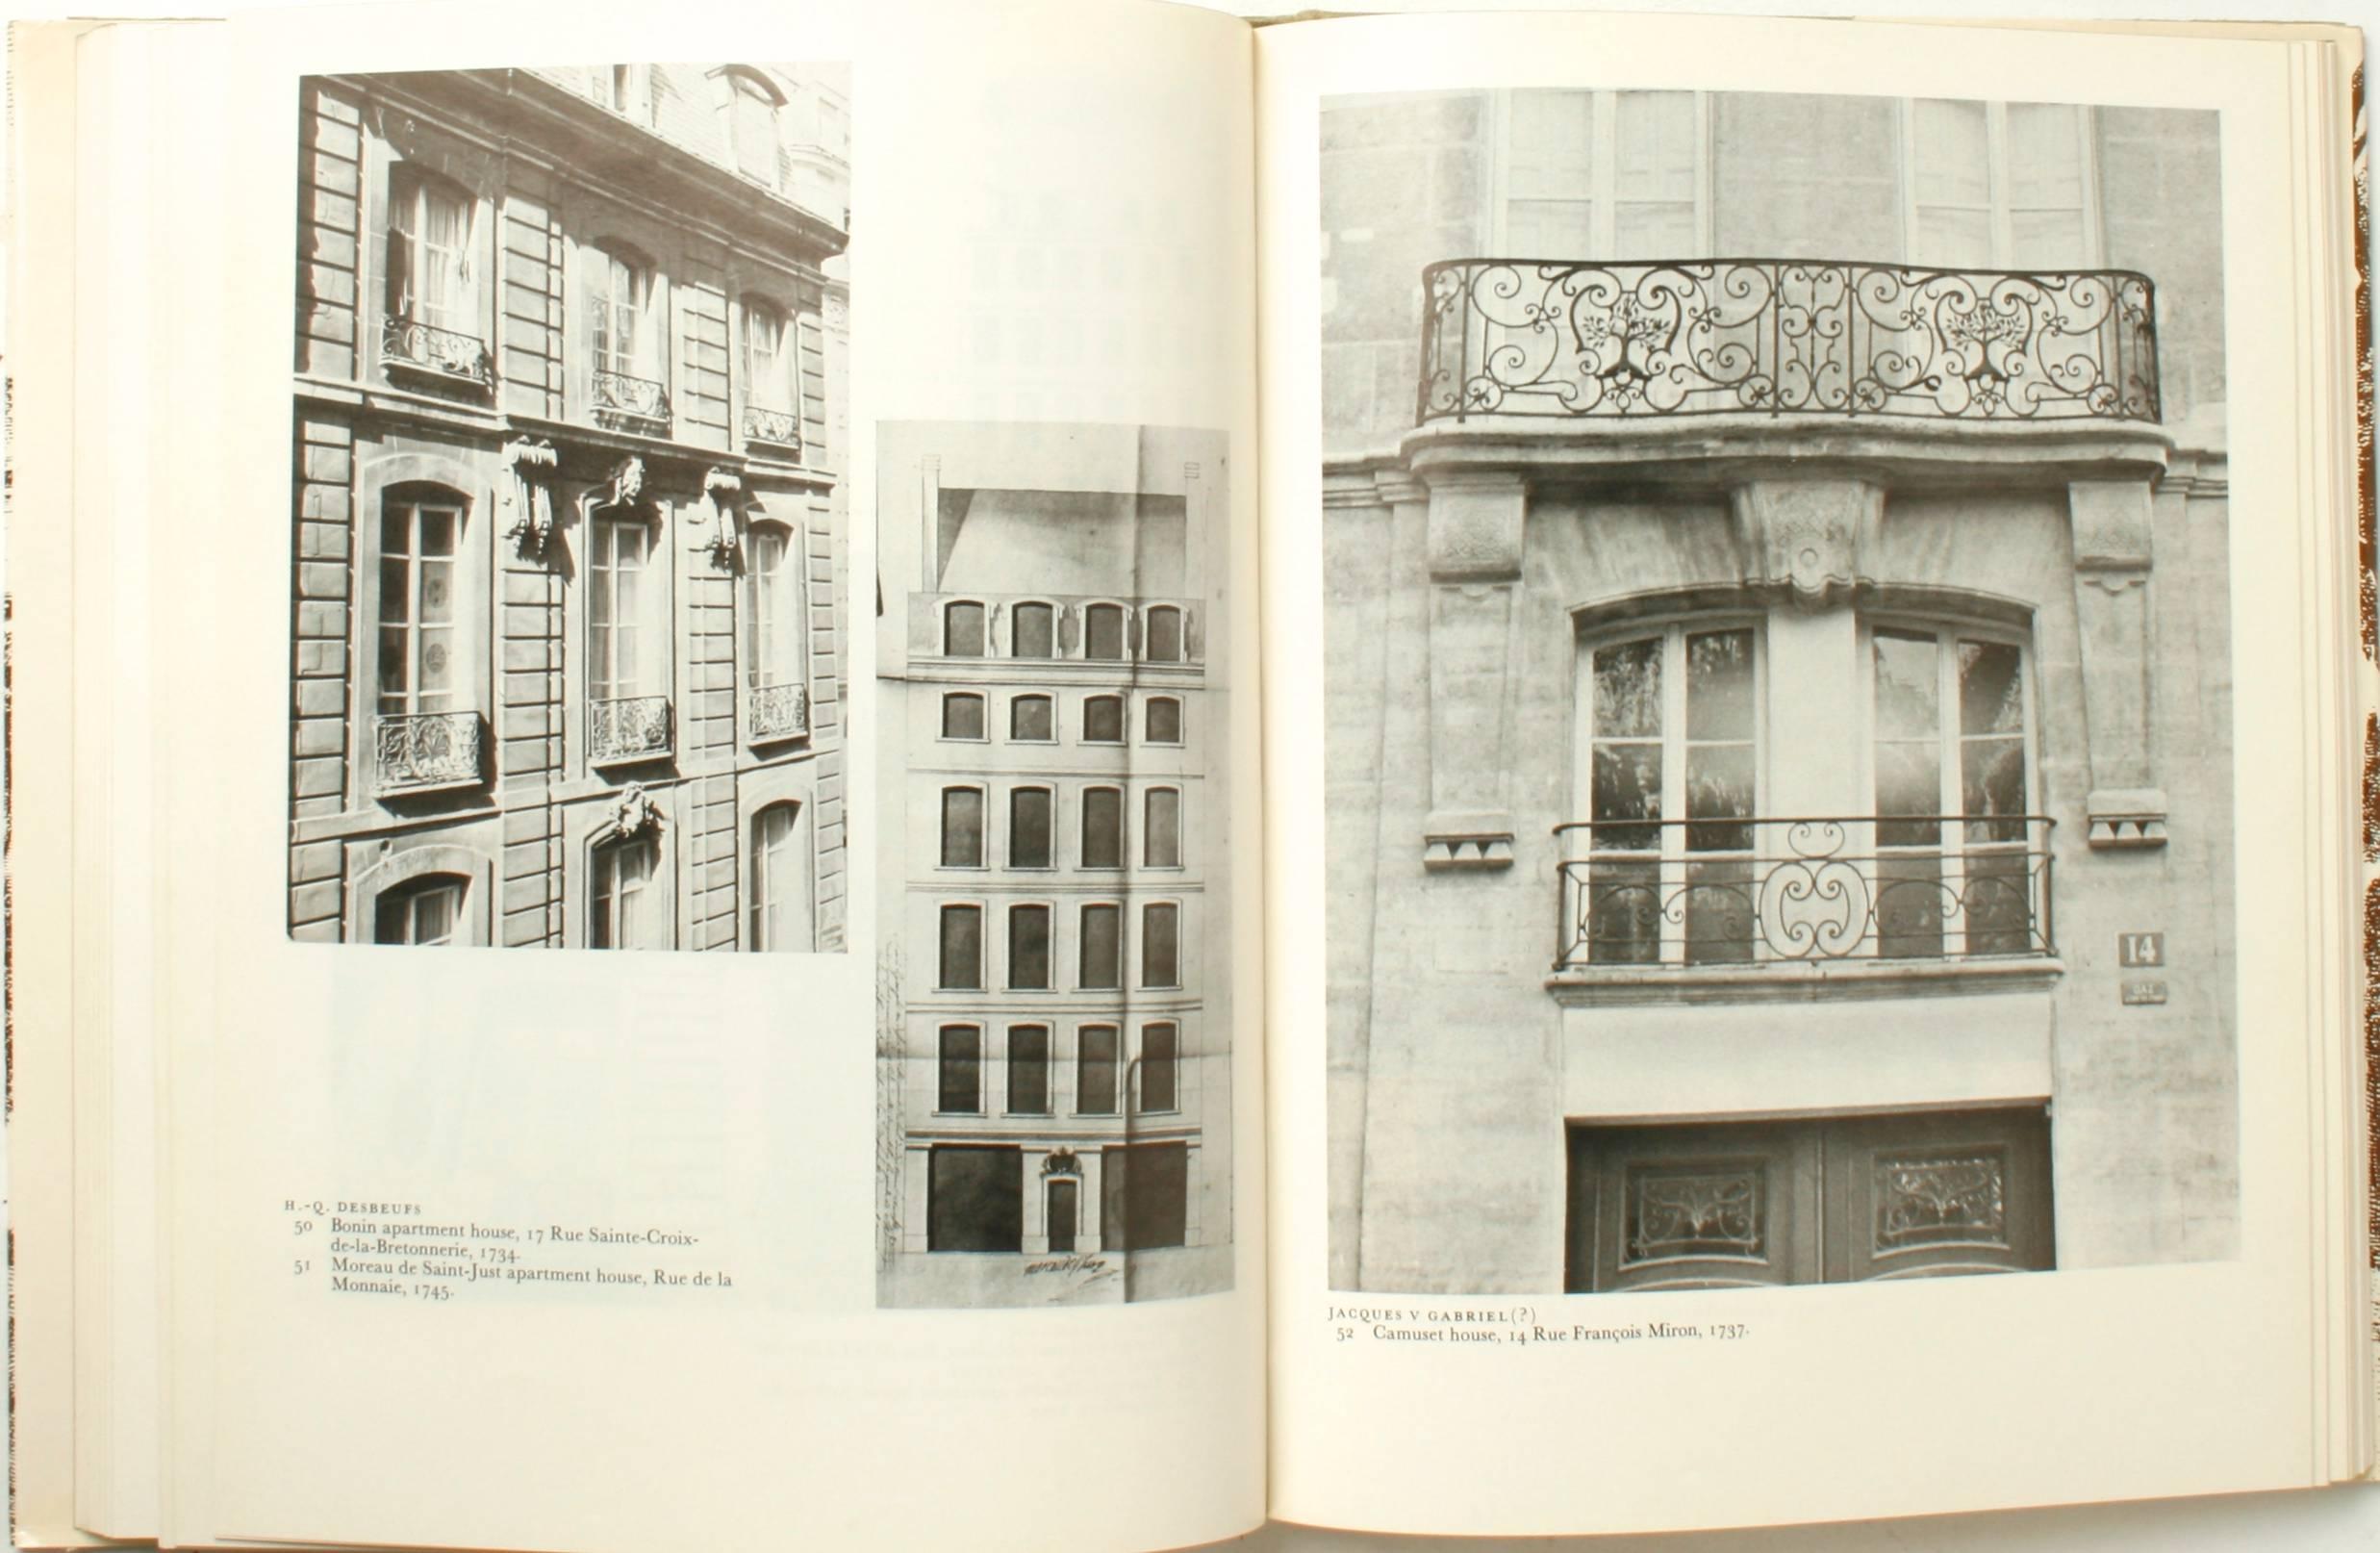 Maisons majestueuses, architecture parisienne du XVIIIe siècle, première édition en vente 1